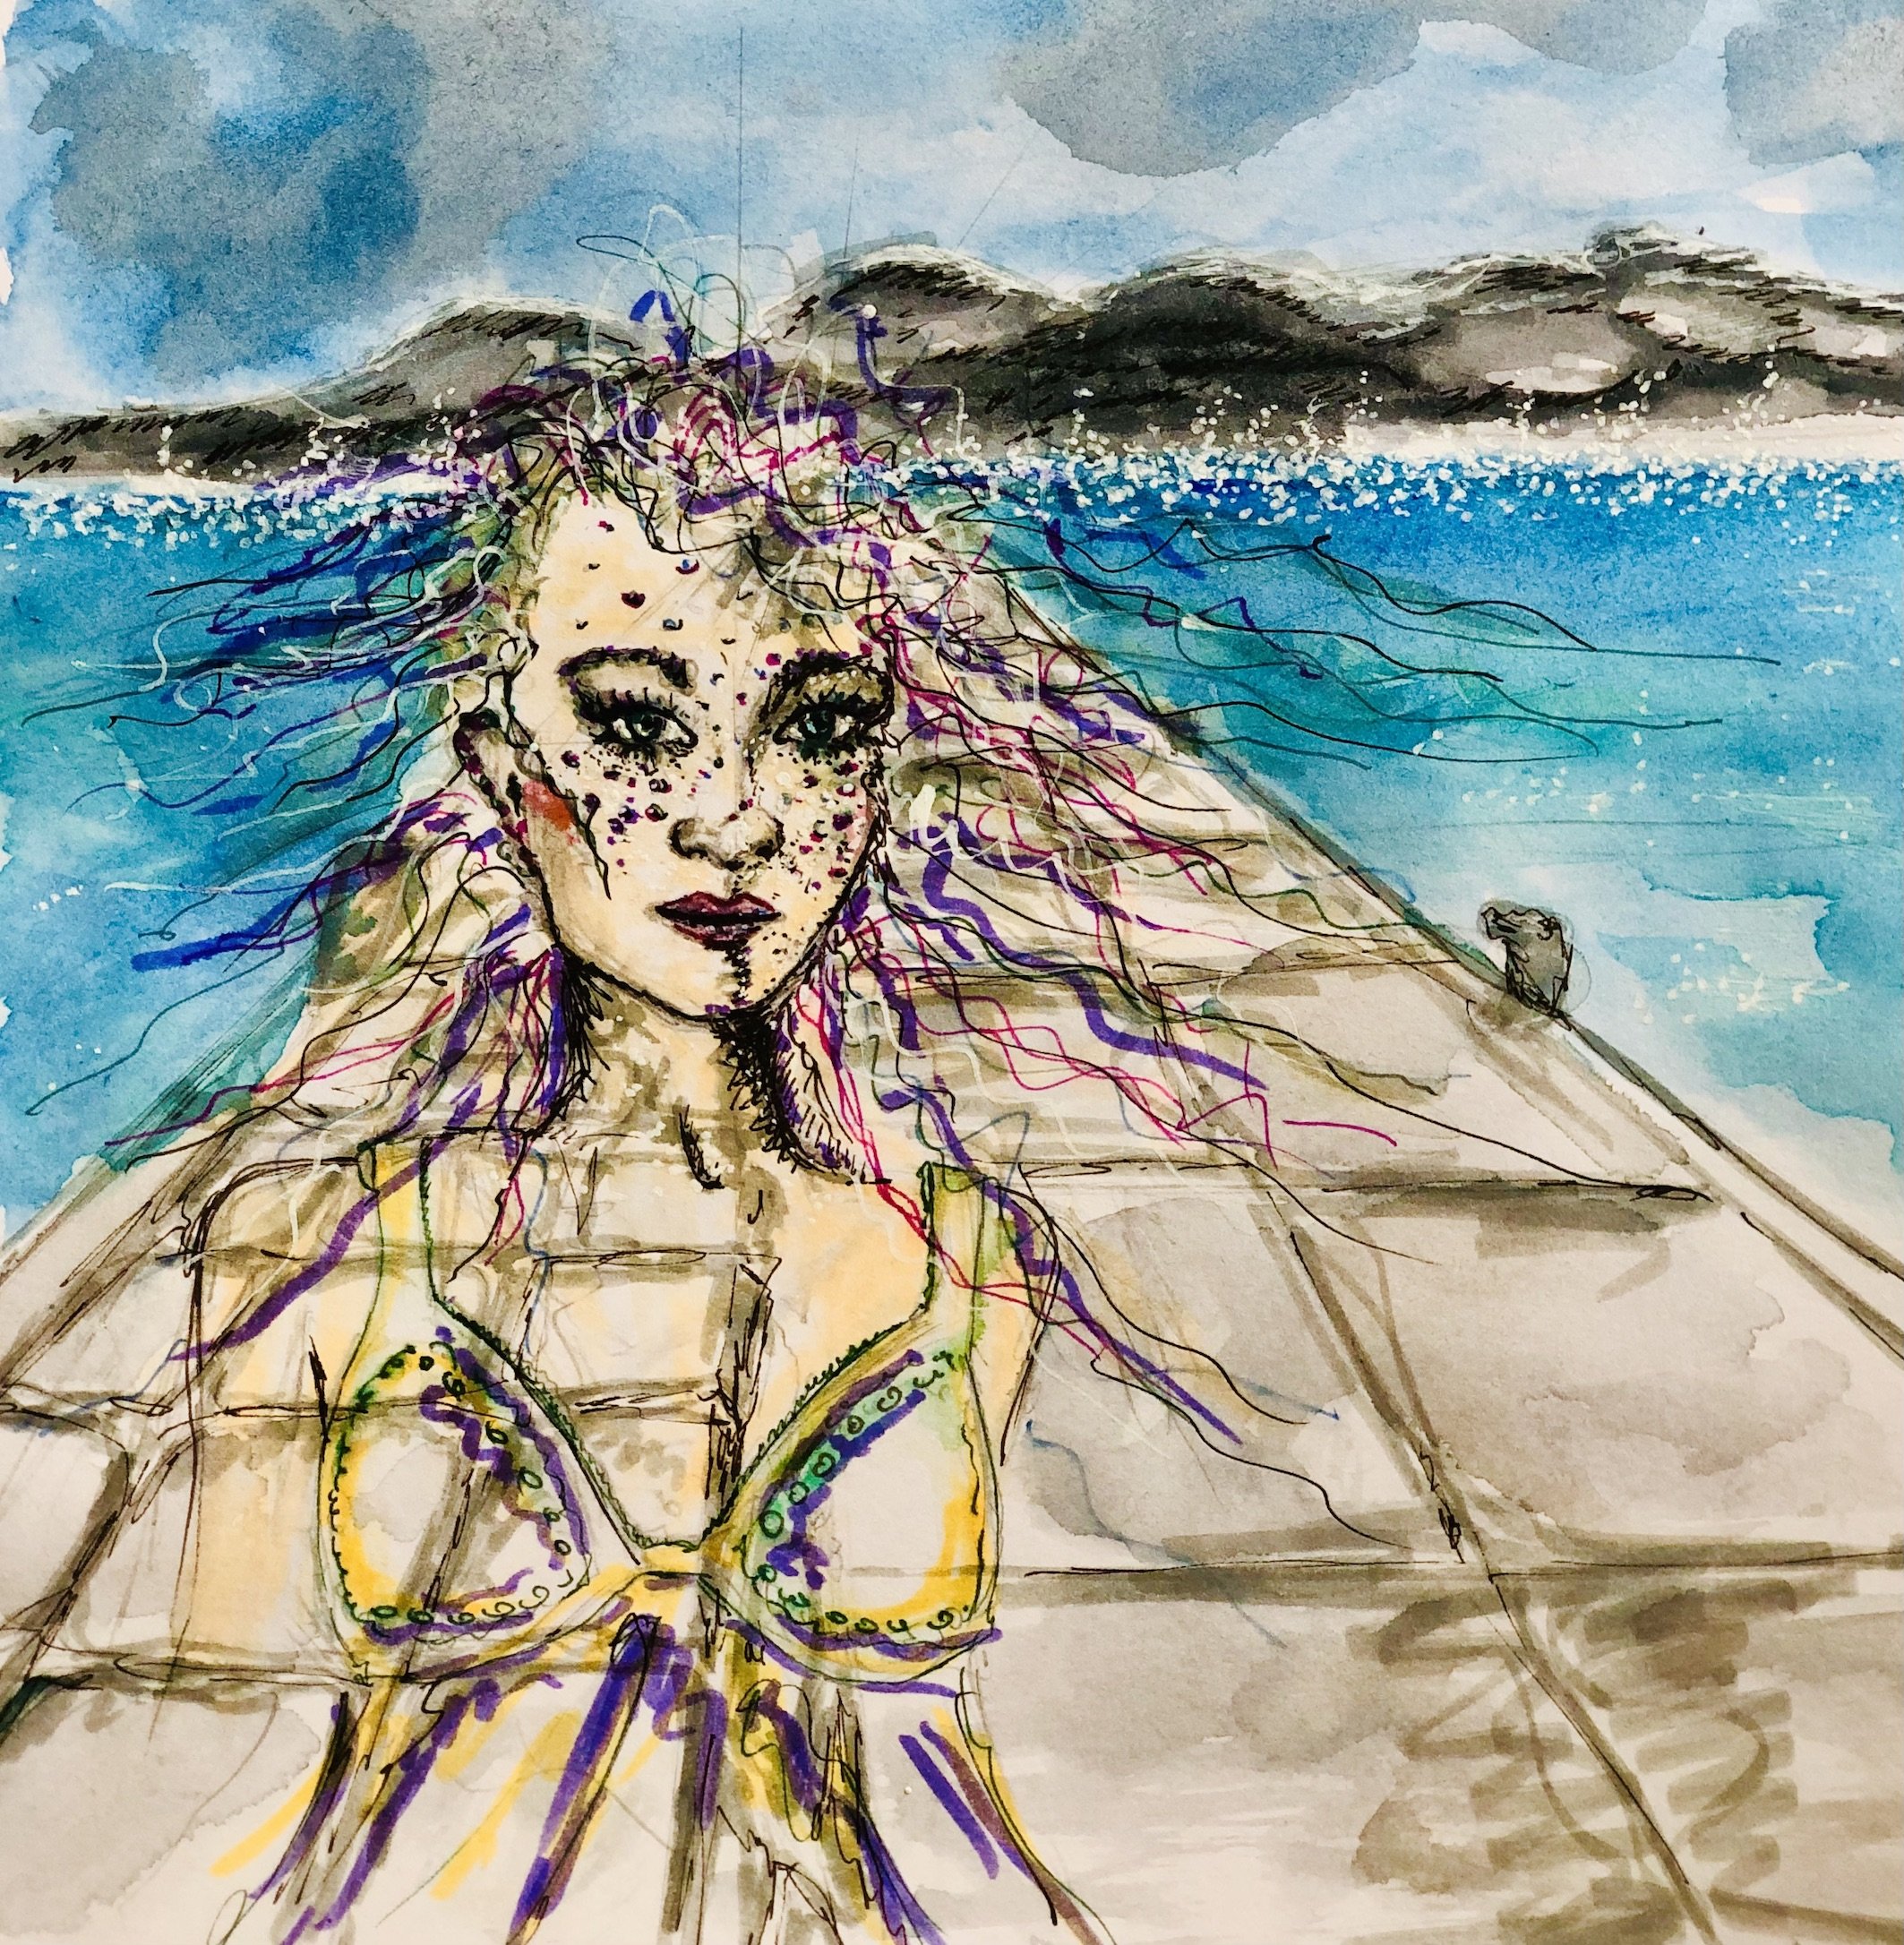 Anahita - goddess of water and love